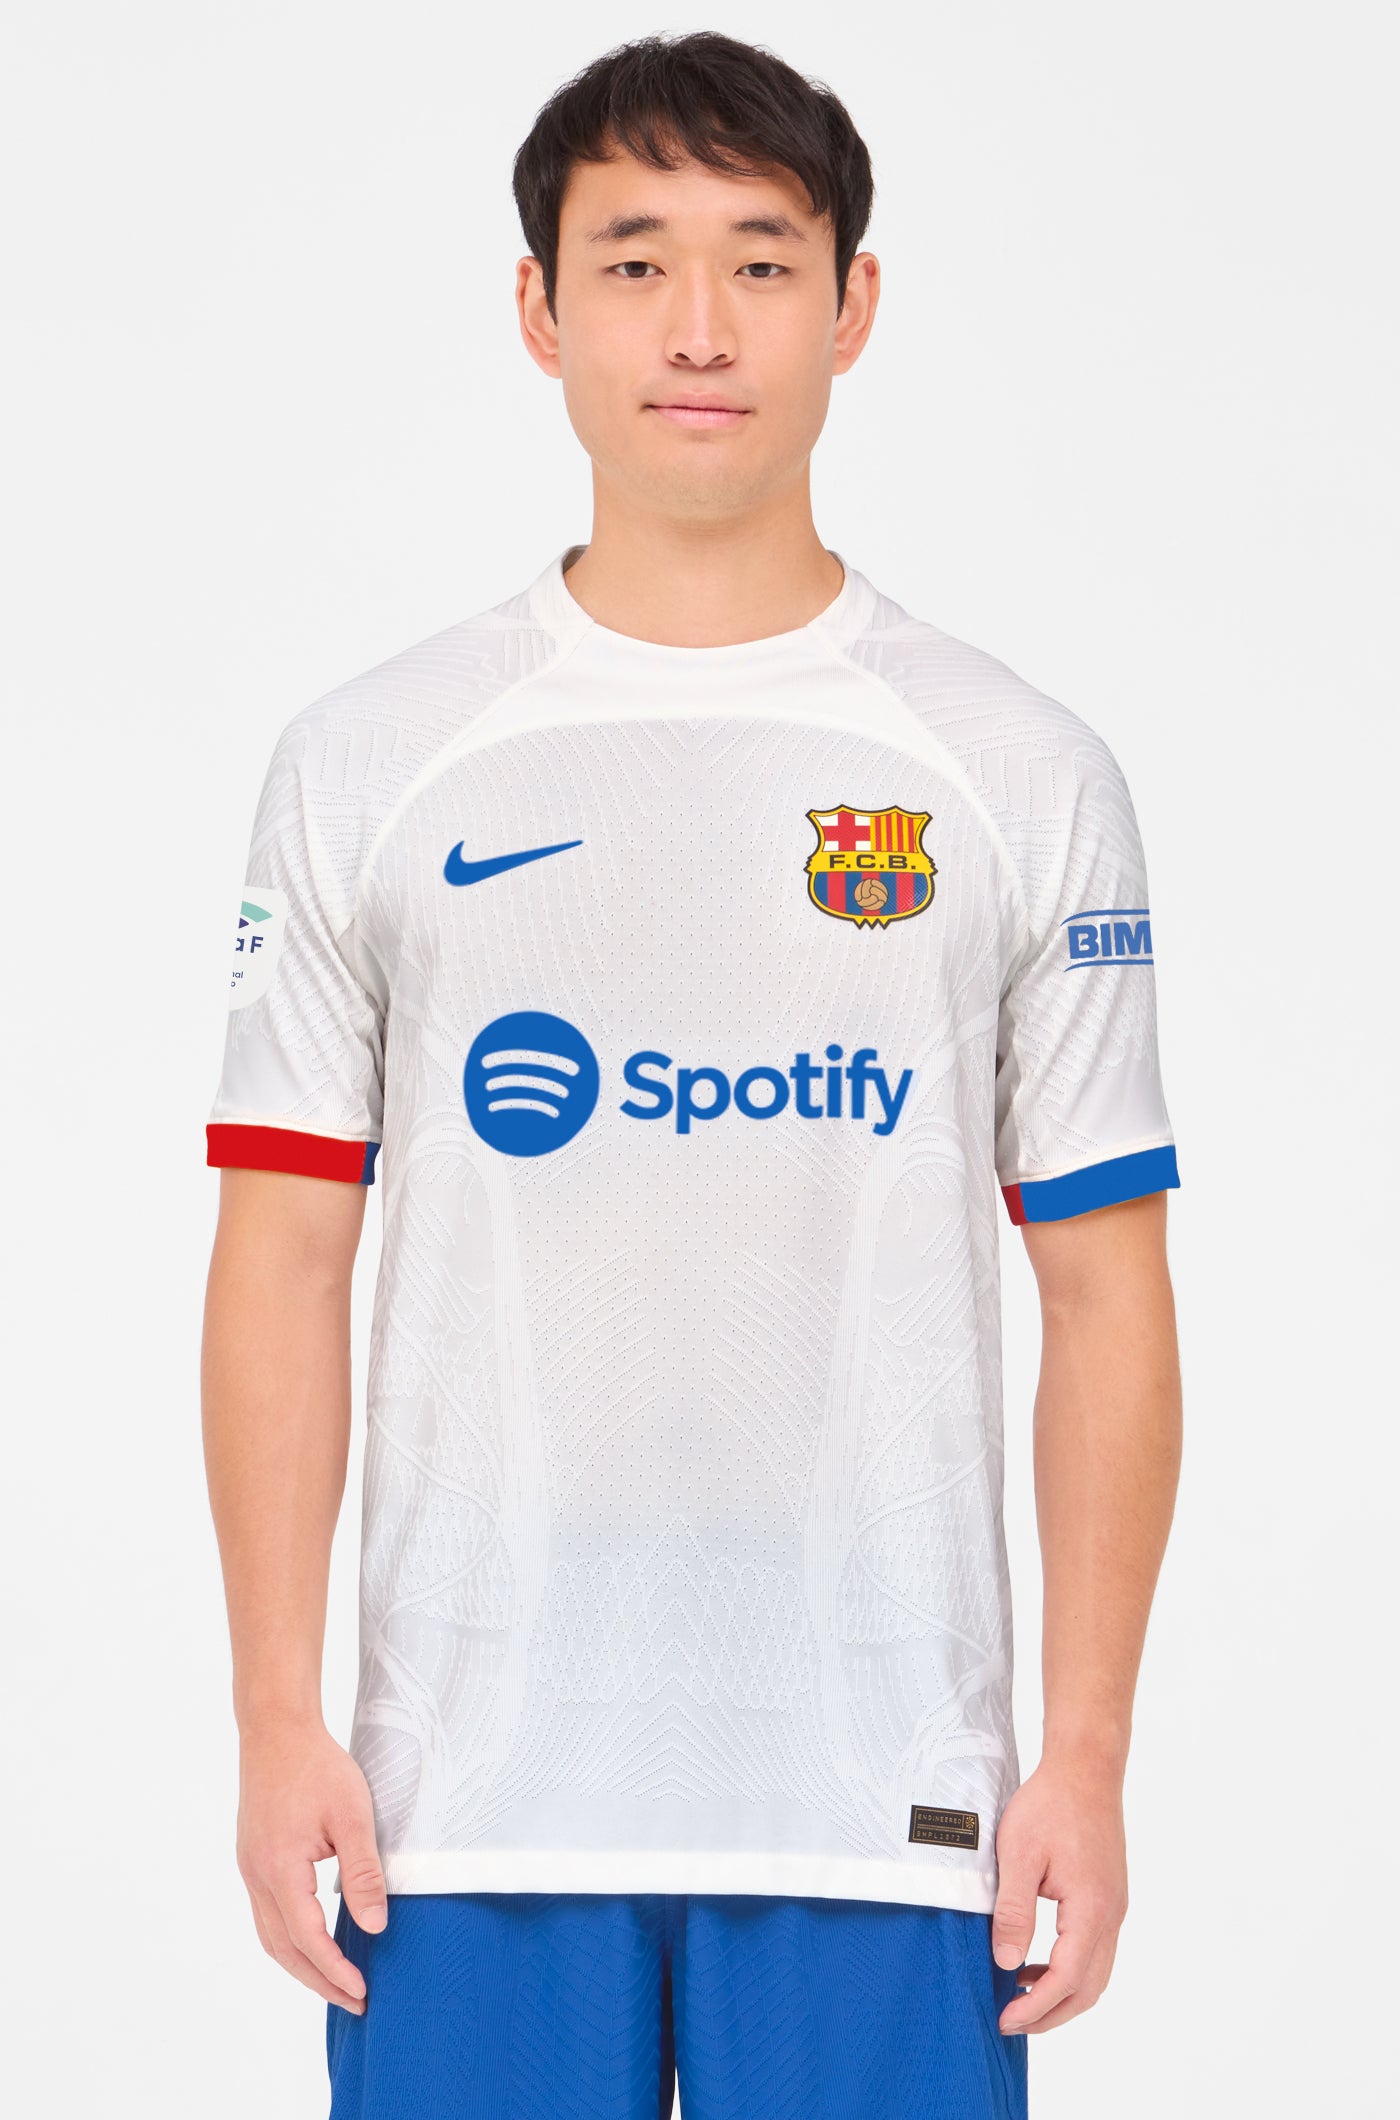 Liga F Camiseta segunda equipación FC Barcelona 23/24 Edición Jugador - OSHOALA